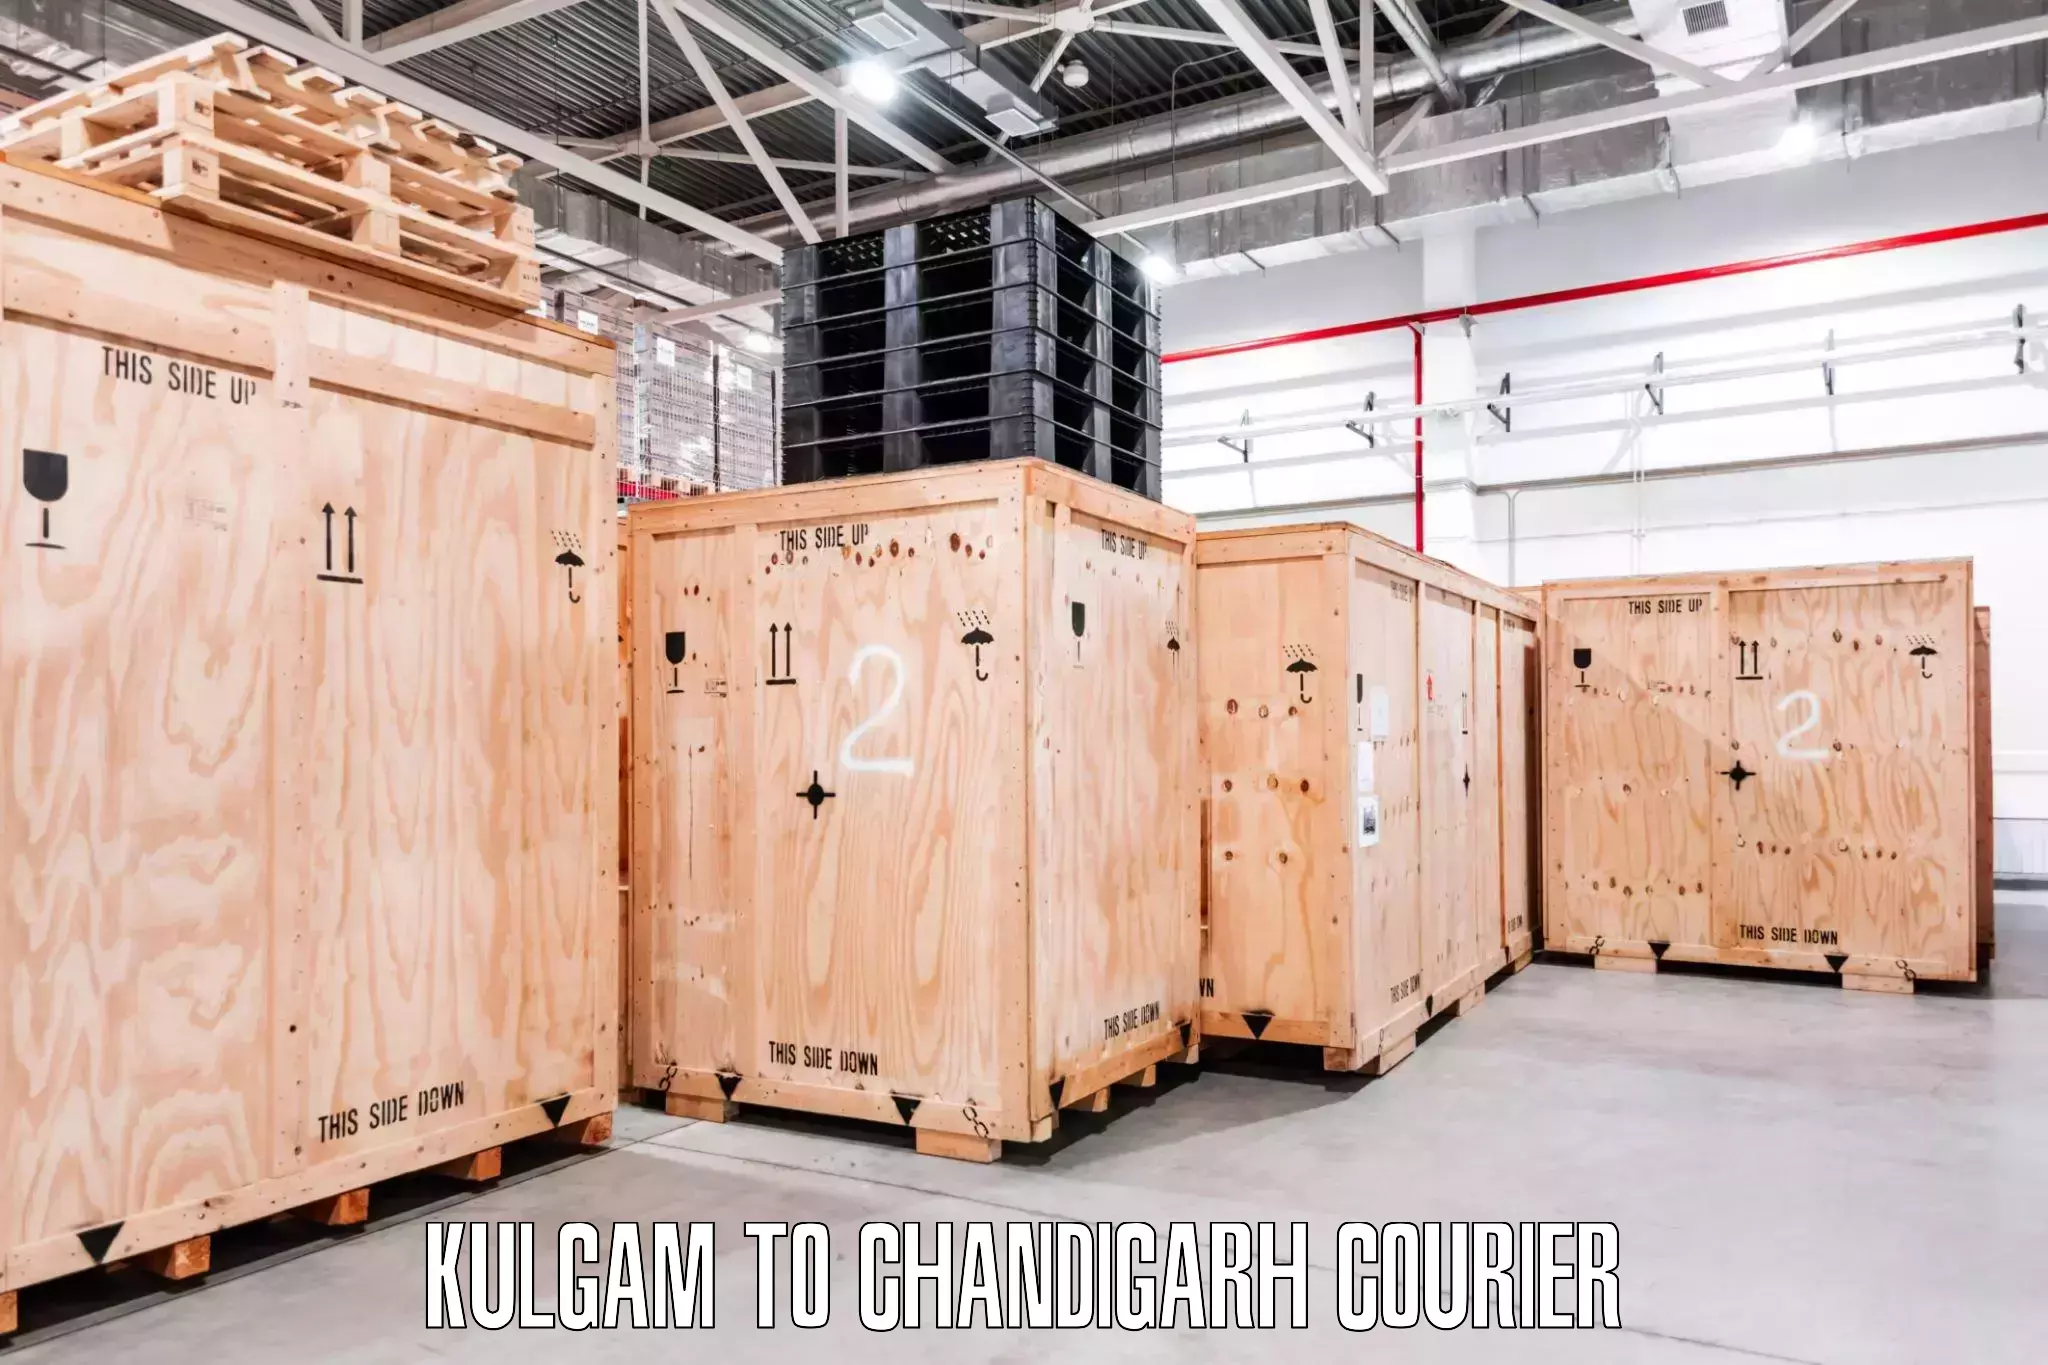 Local furniture movers Kulgam to Chandigarh